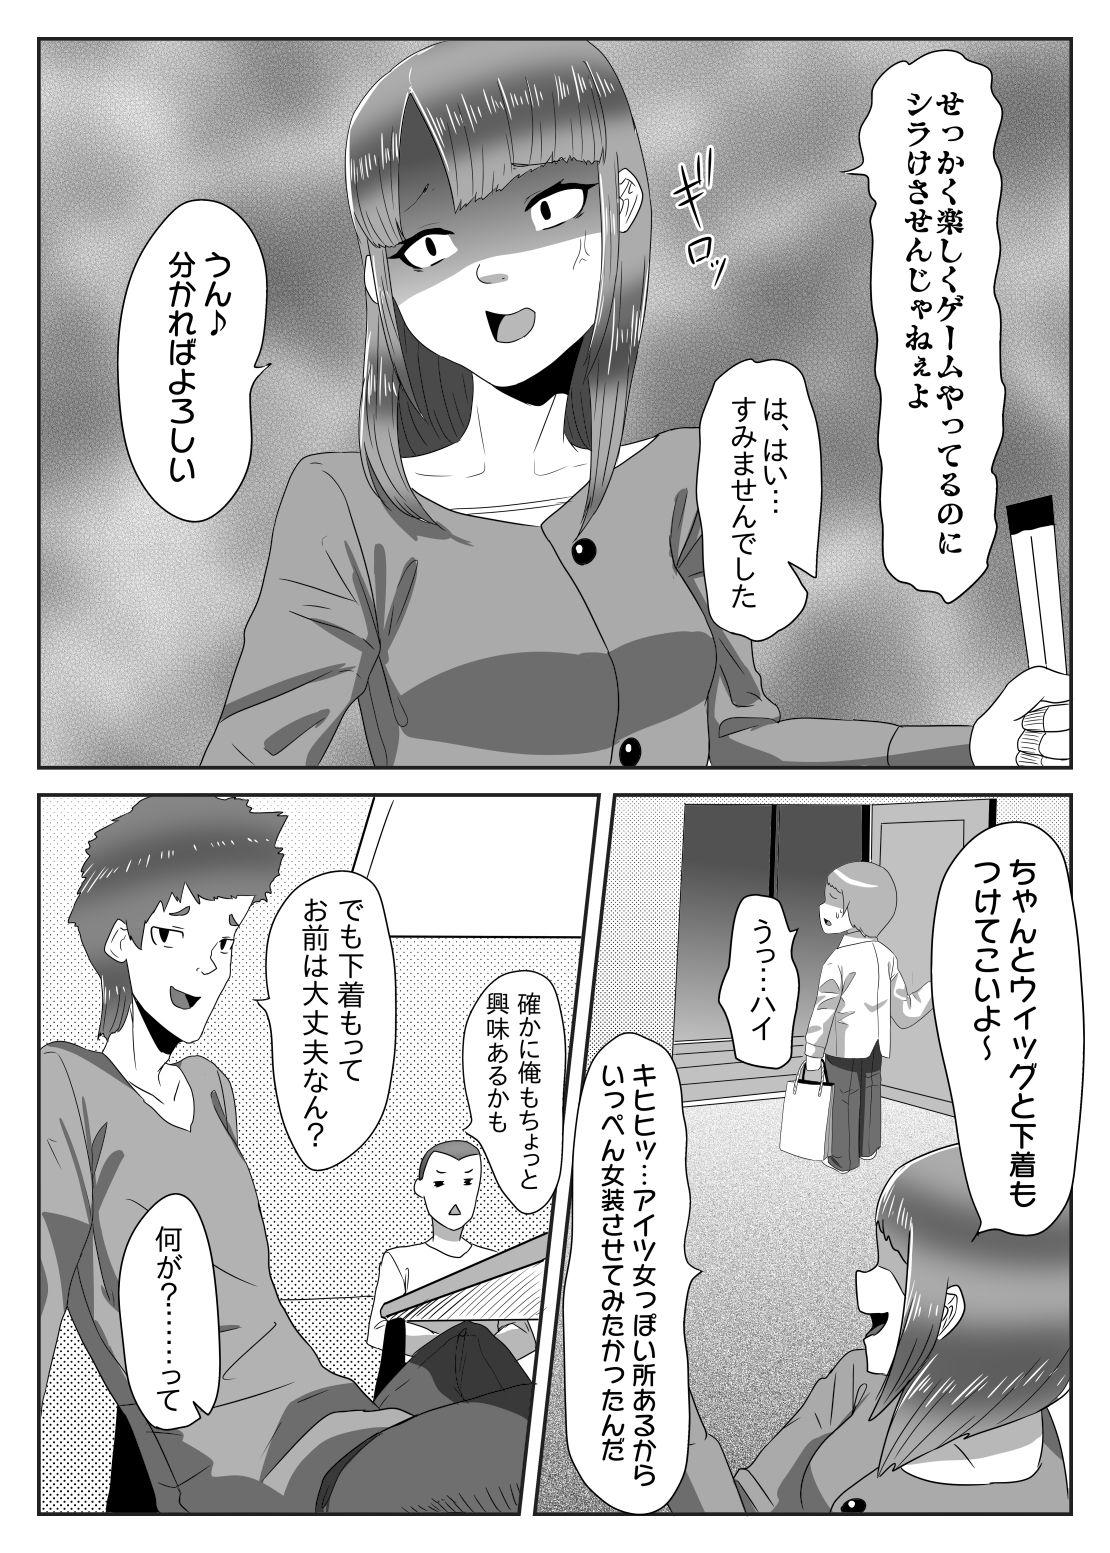 Girls Batsu gēmu de josō sanpo sa se rarete itara ikemen futanari musume ni tasuke raremashita - Original Petera - Page 5